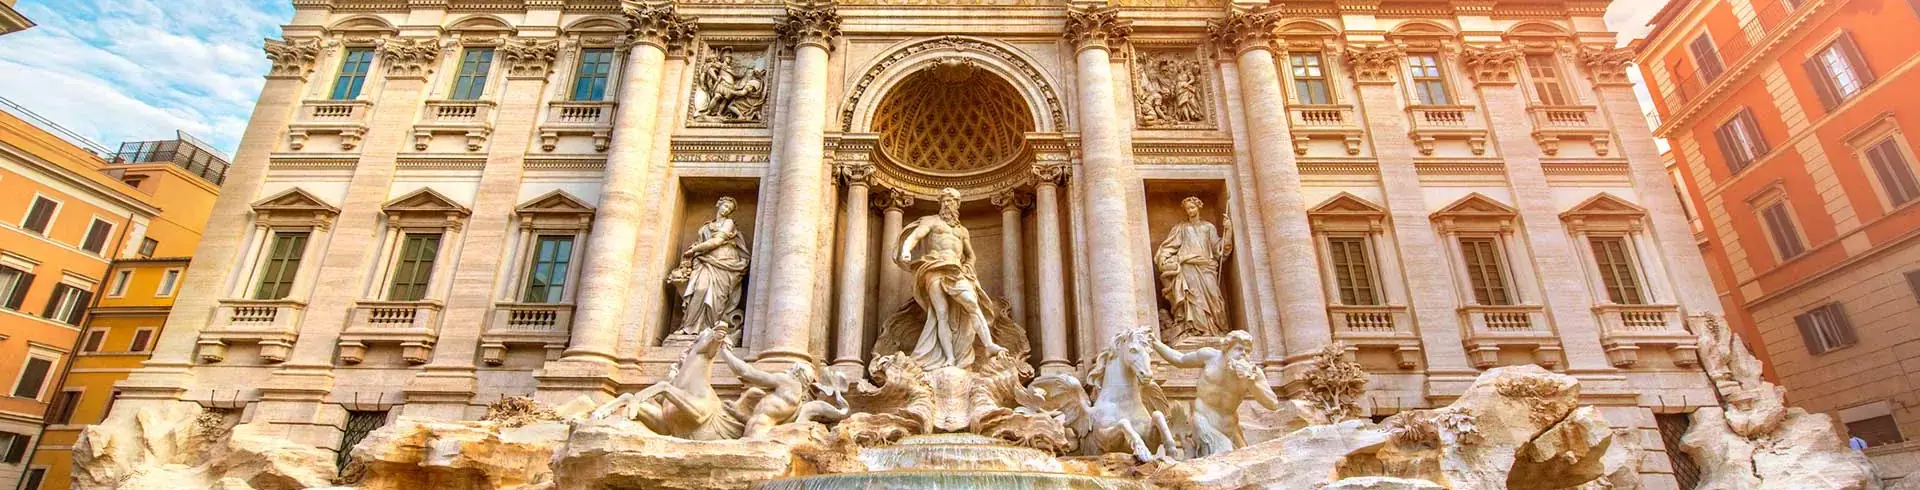 Saluti Roma - Rzym i Watykan